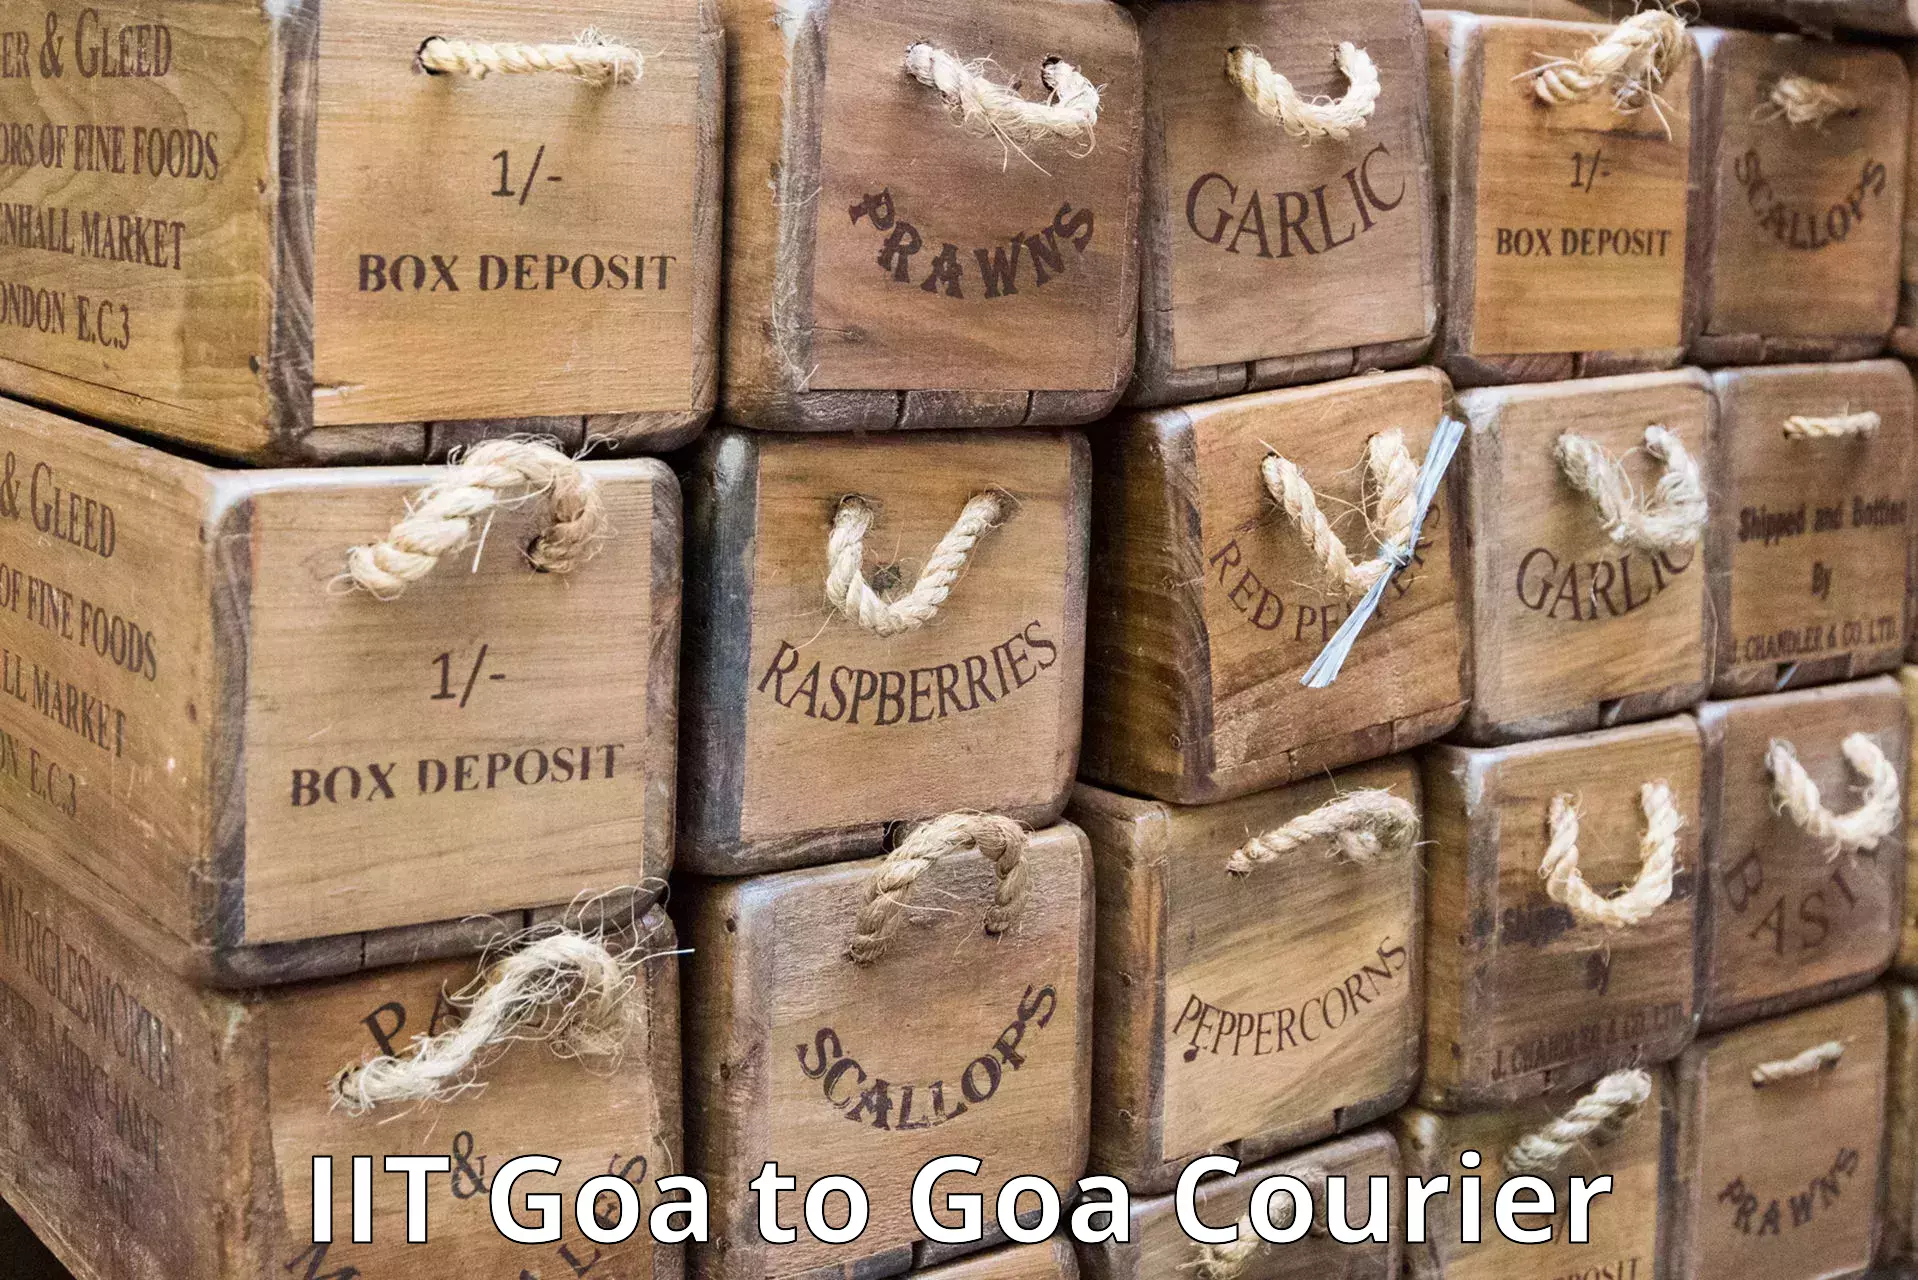 Same-day delivery options IIT Goa to IIT Goa